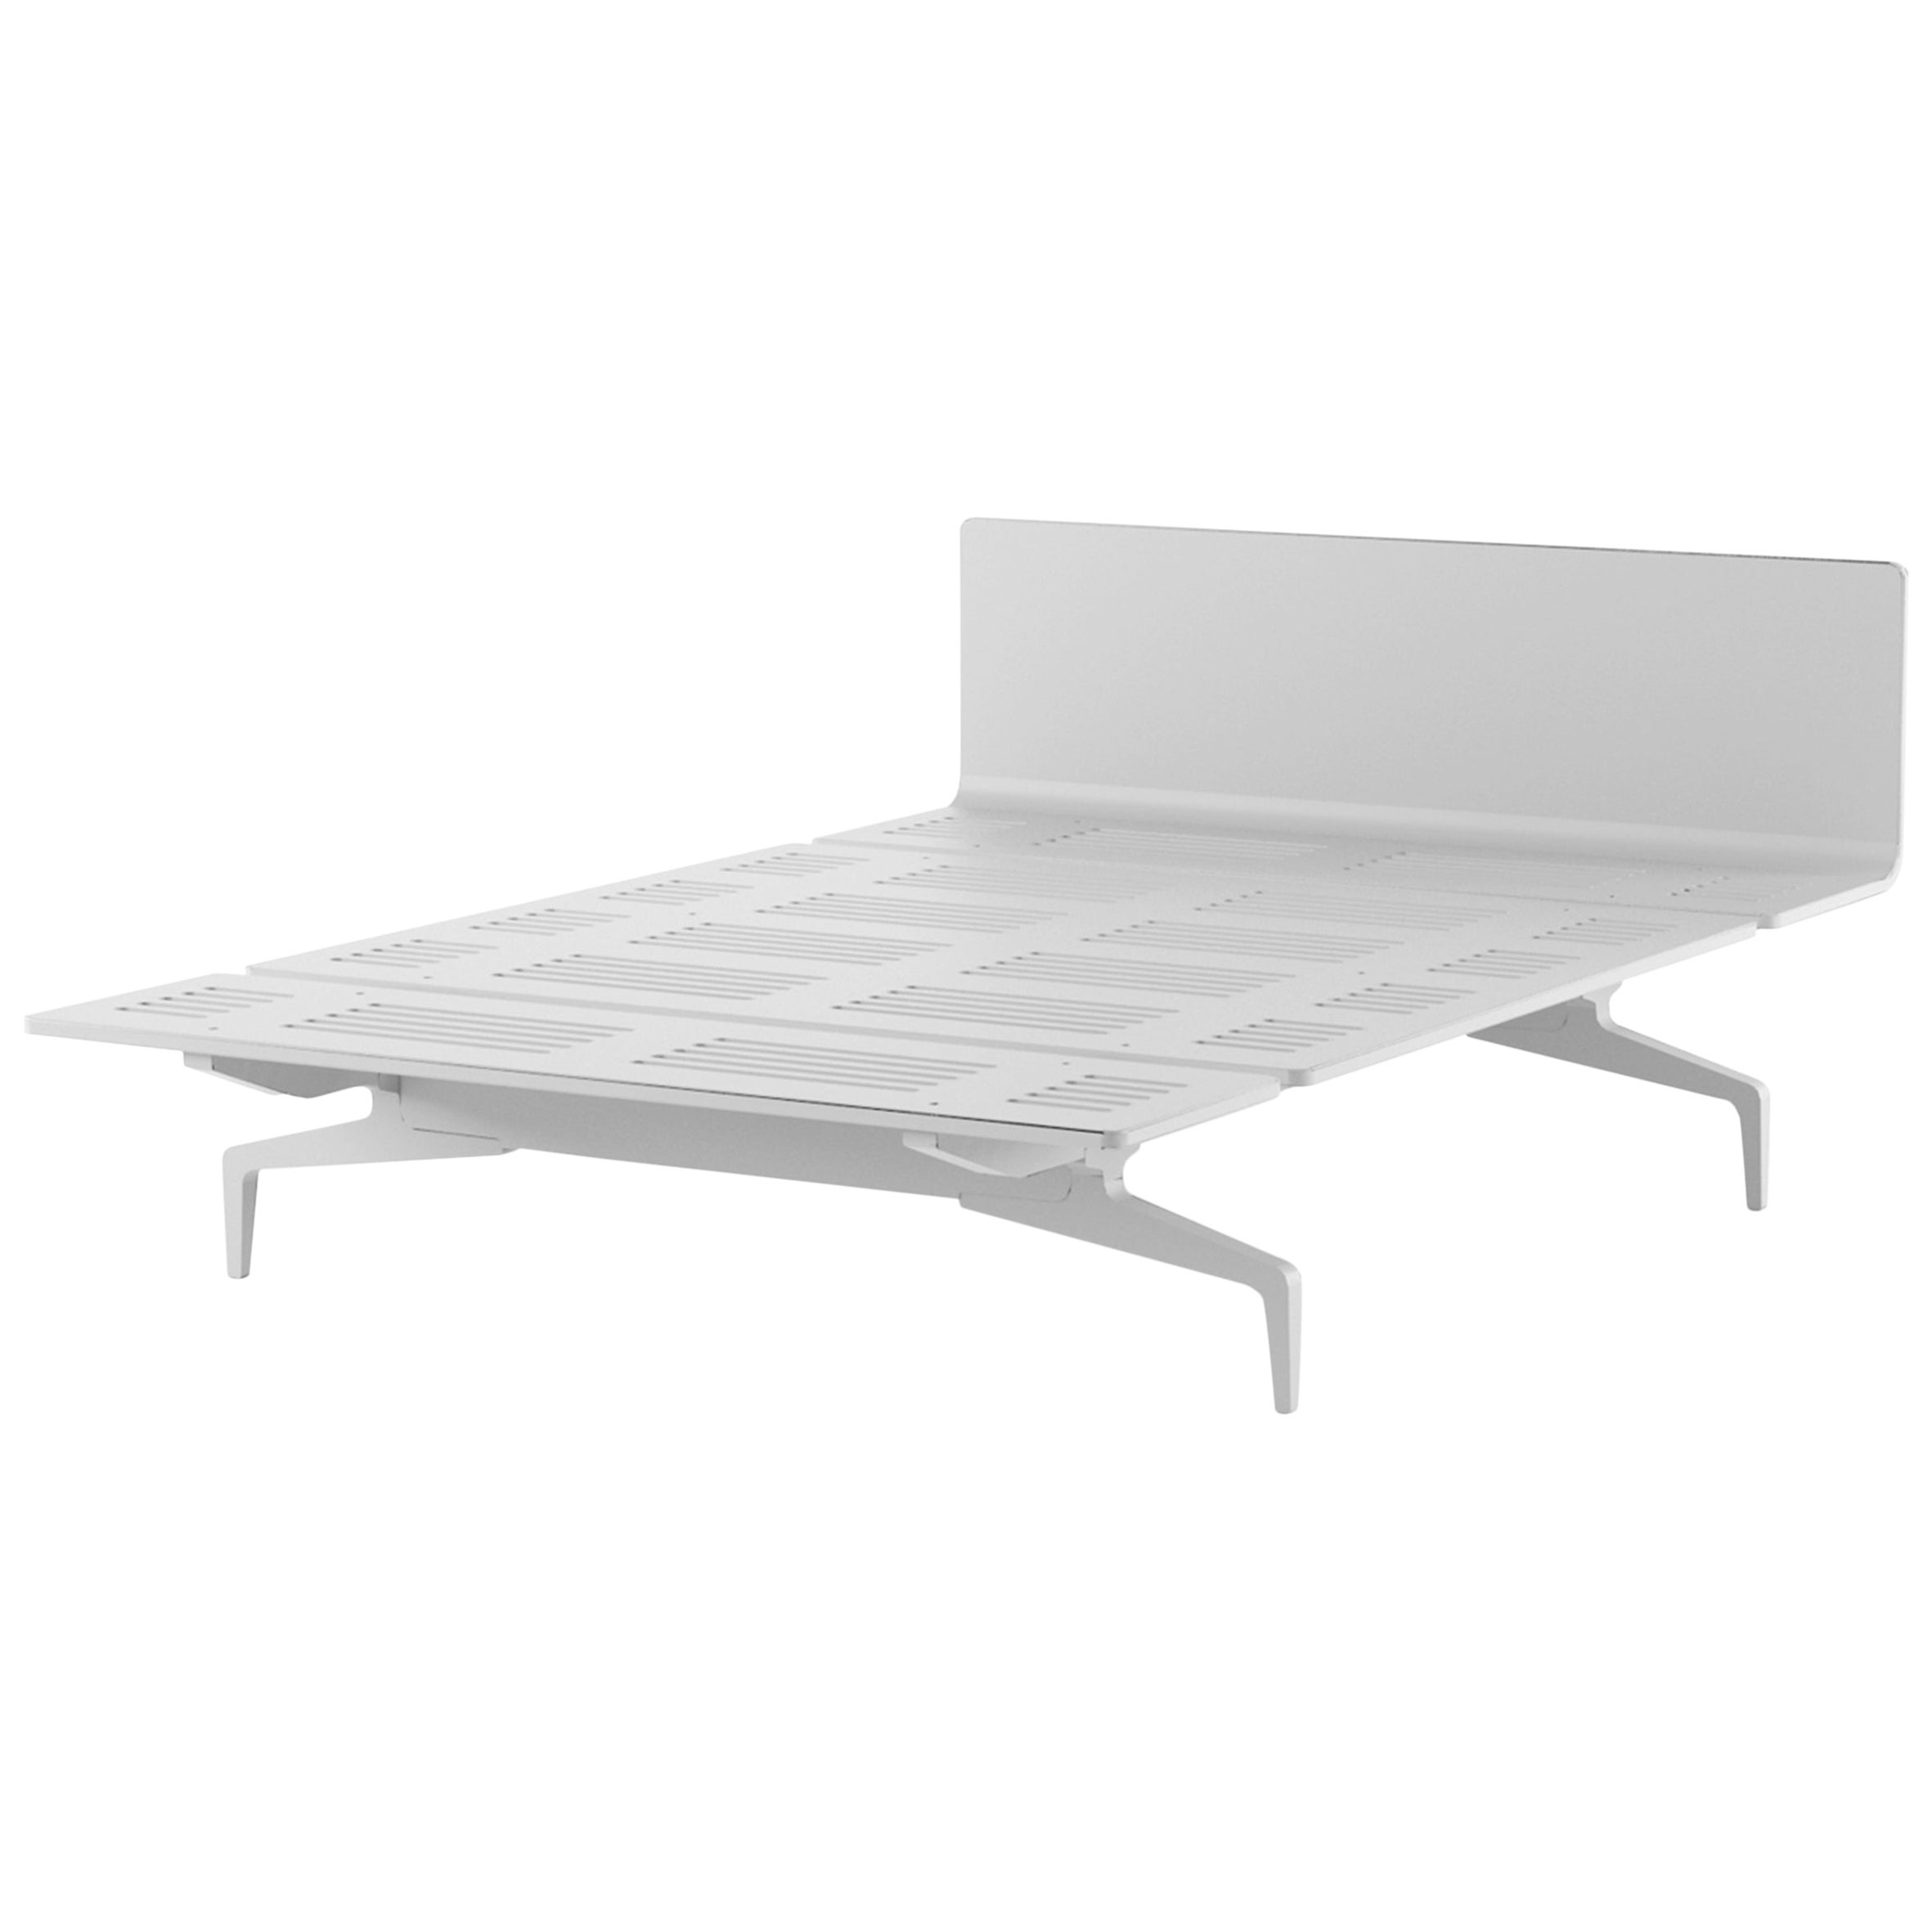 Alias LL3 Legnoletto Bed 160 cm in White Matt Lacquer Frame by Alfredo Häberli For Sale